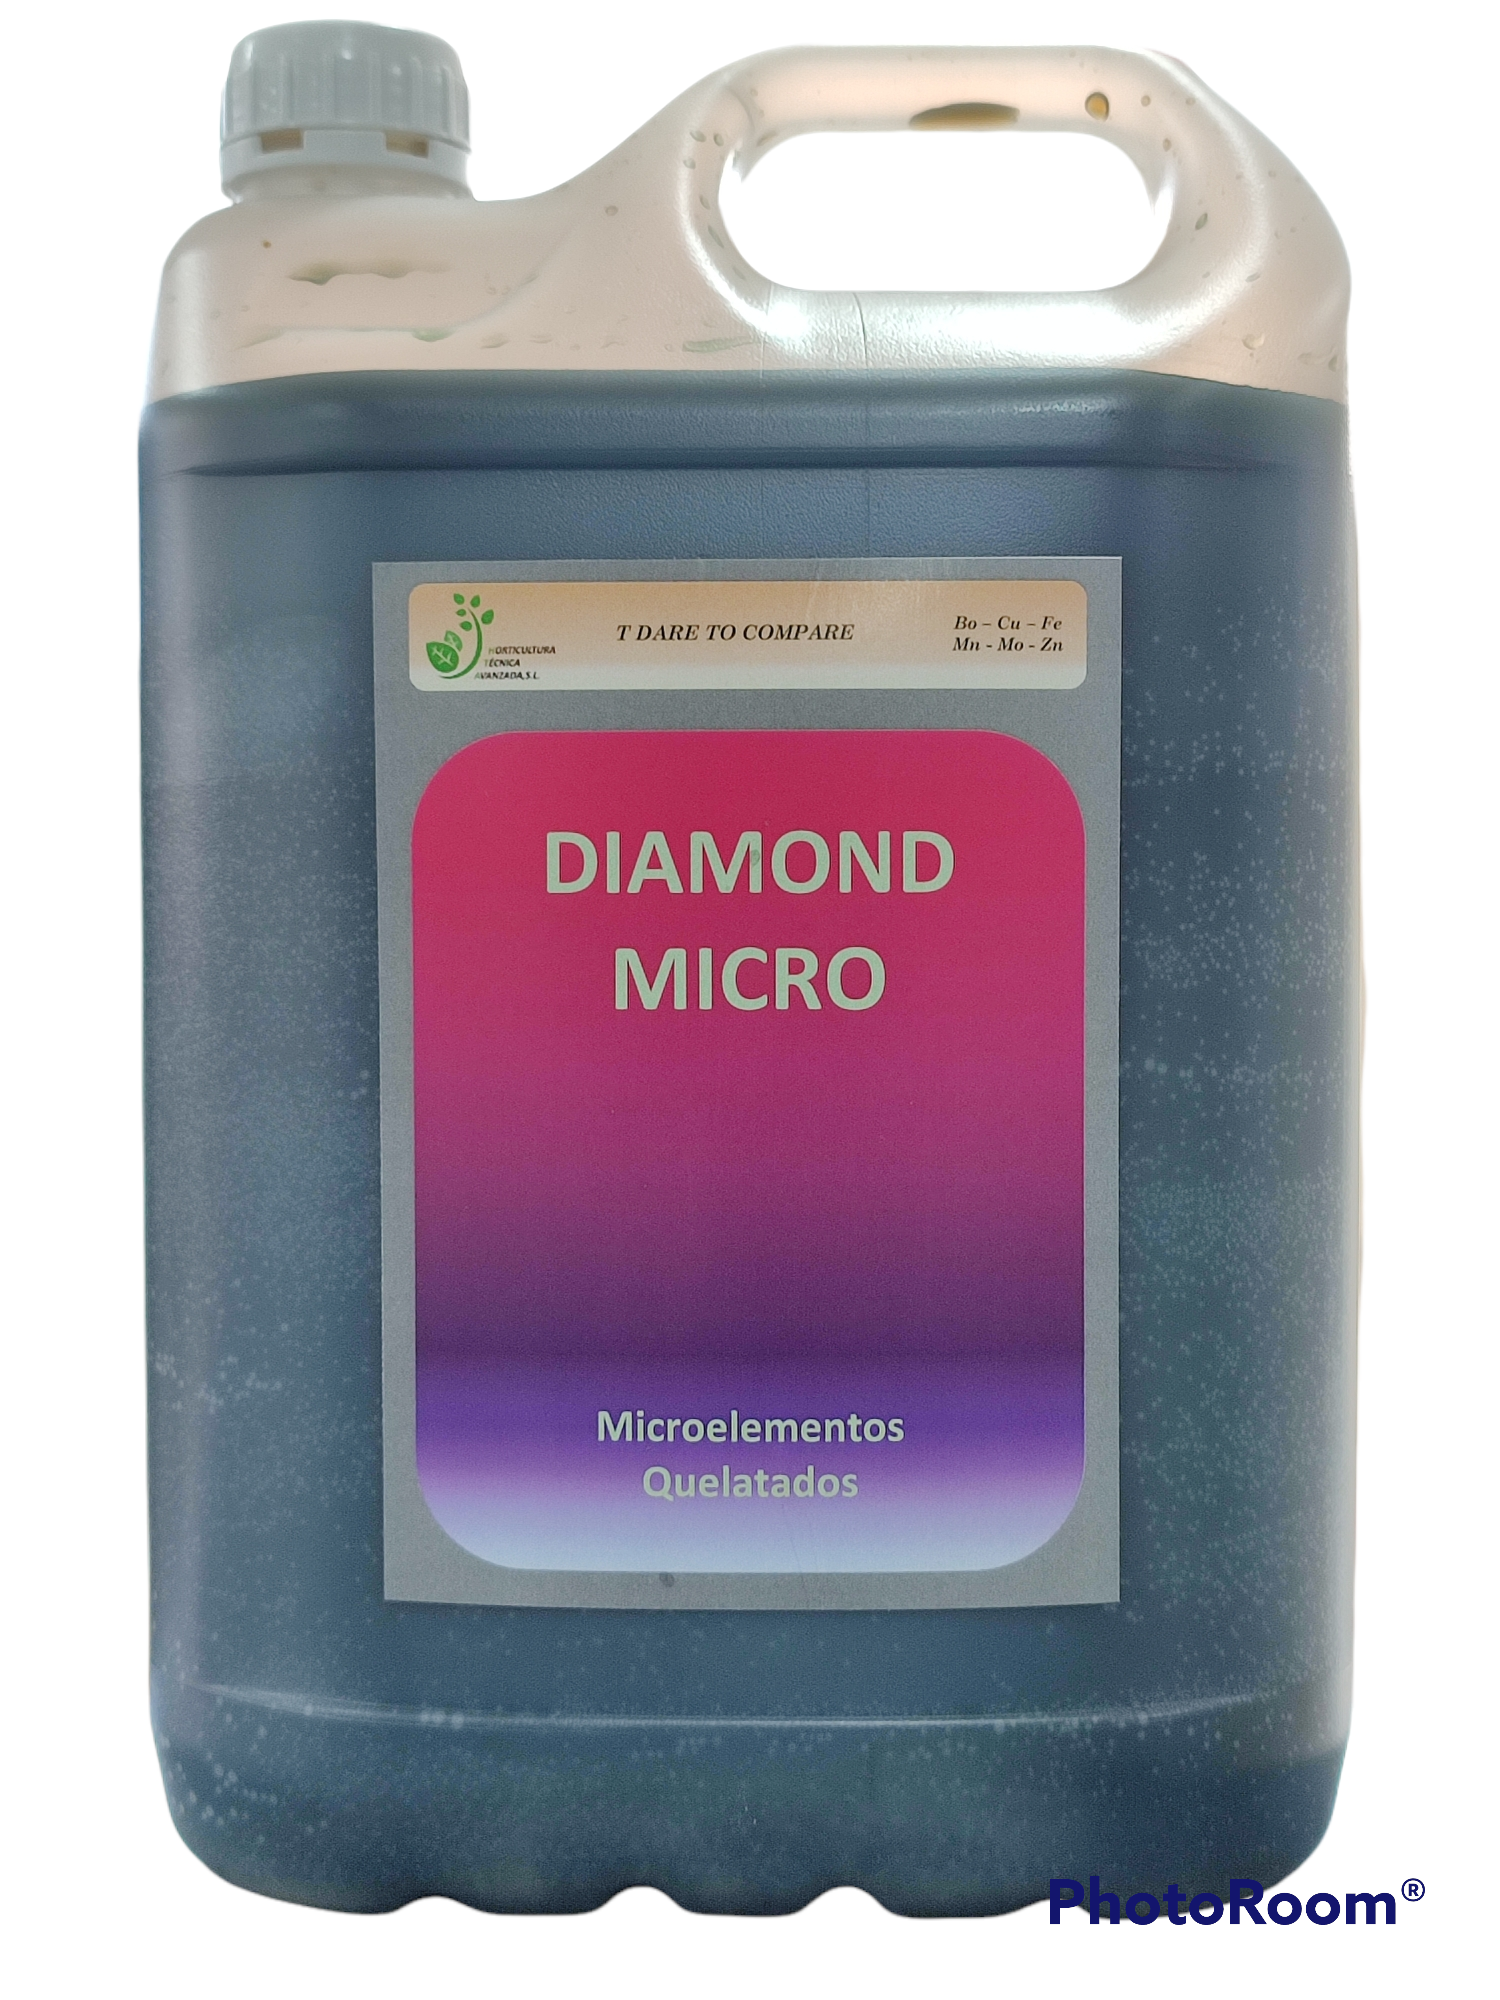 DIAMOND MICRO Horticultura Técnica Avanzada, Env. 5 L